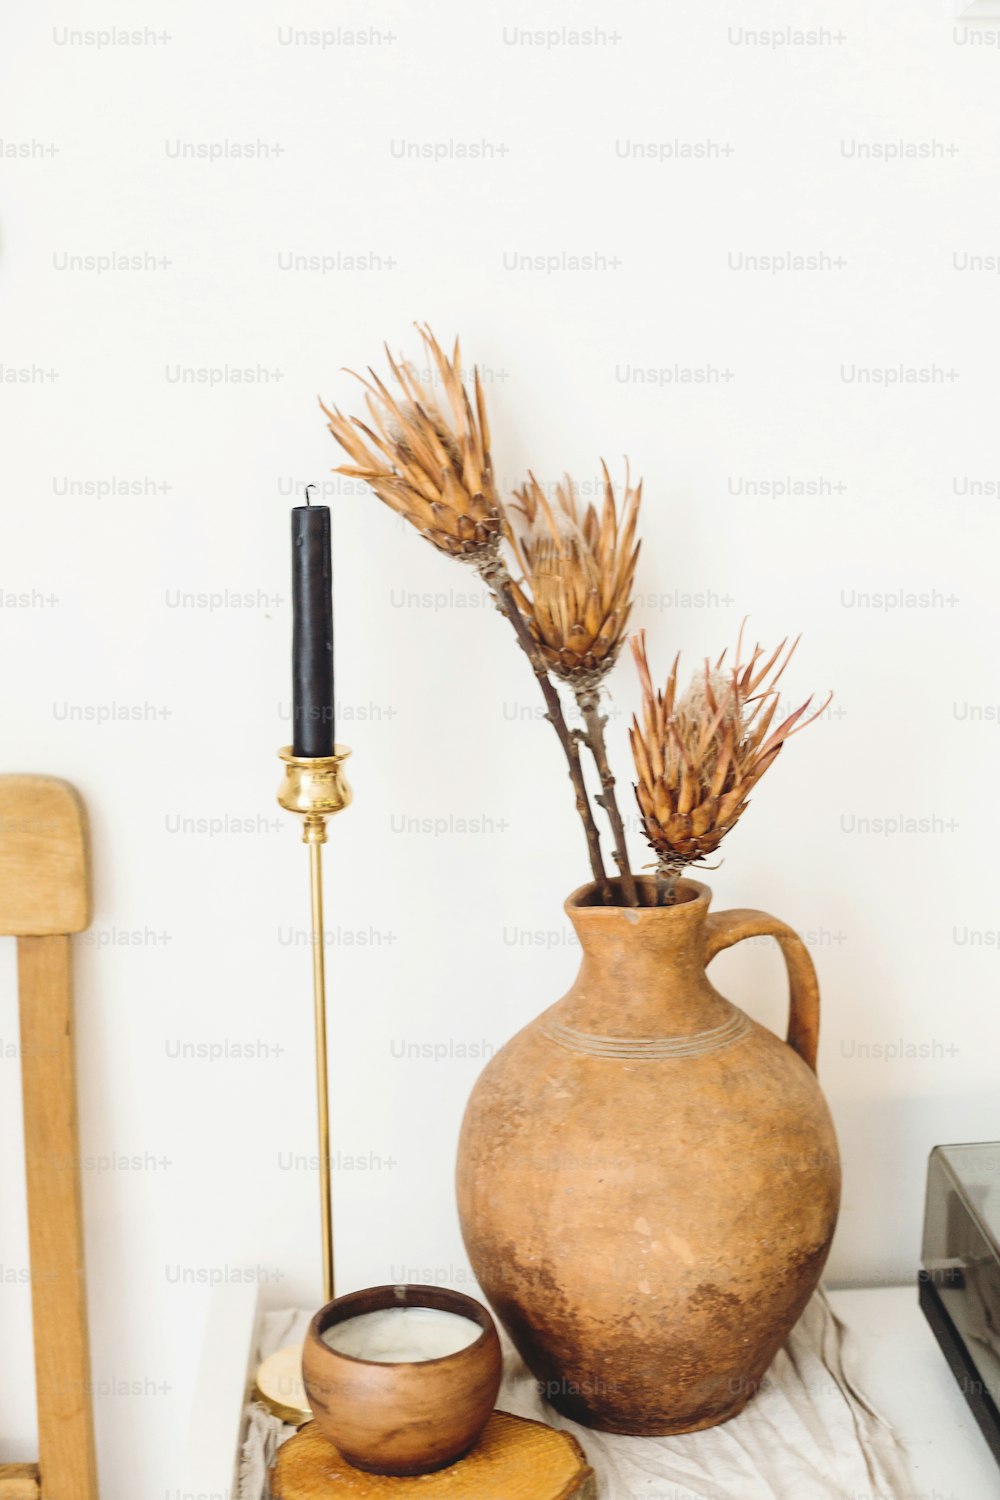 Fiori secchi di protea in un vecchio vaso di argilla e candela sullo sfondo della parete bianca in una casa di campagna. Arredamento moderno della casa. Elementi di interior design semplici ed eleganti. Casa rurale